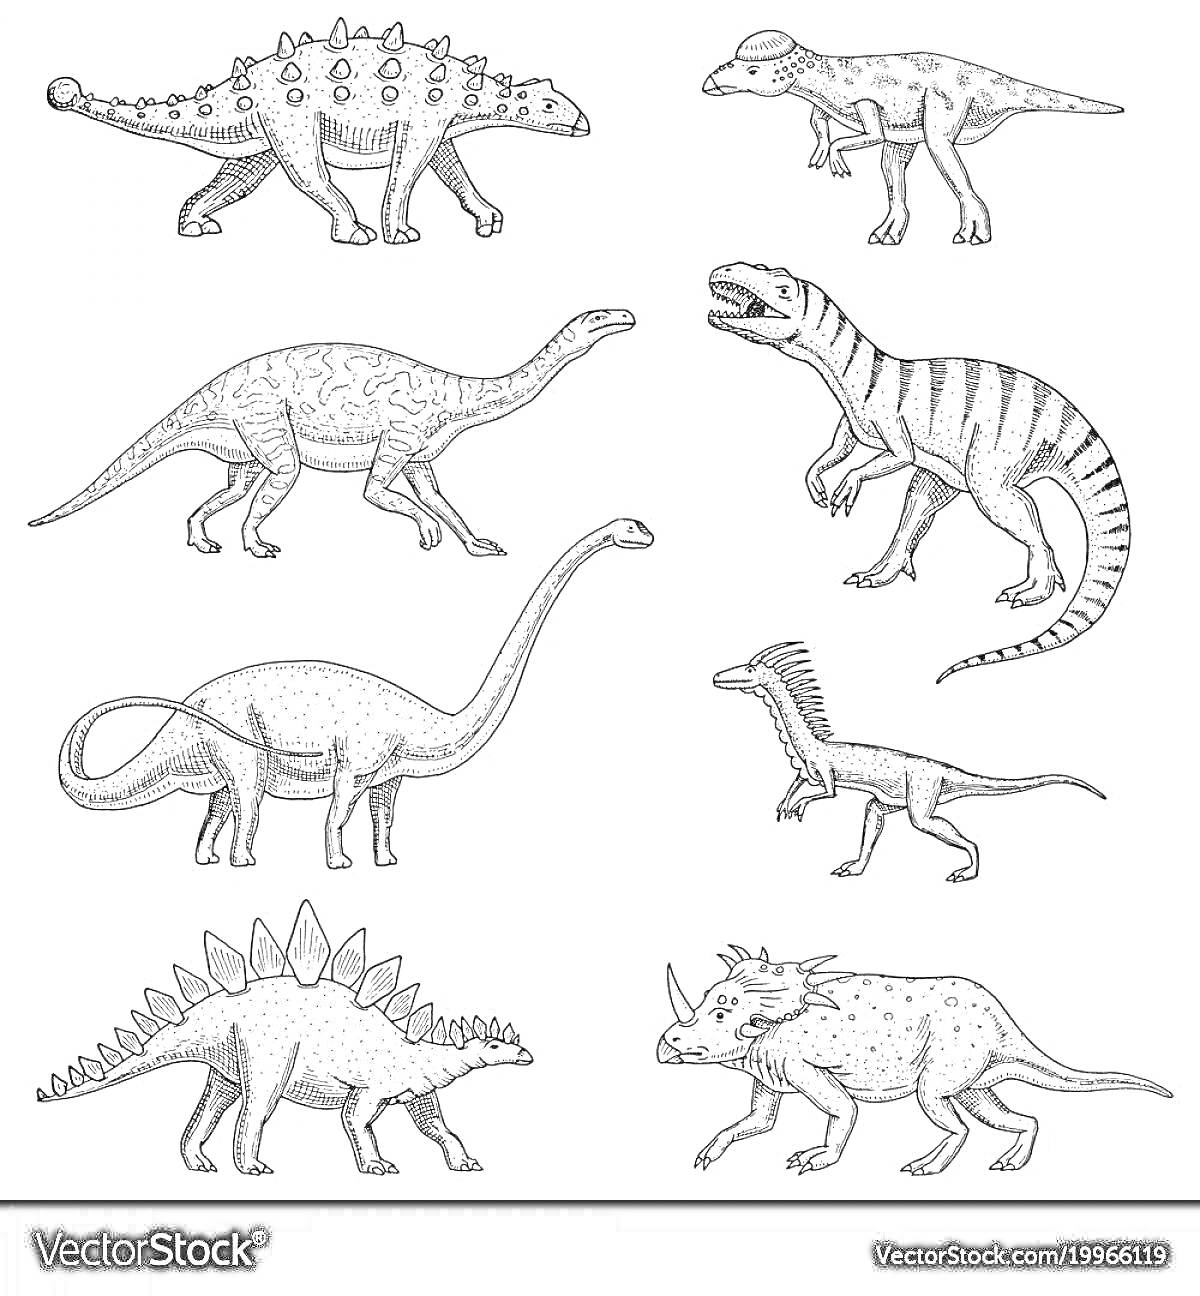 Раскраска Динозавры: Анкилозавр, Пахицефалозавр, Брахиозавр, Аллозавр, Диплодок, Целурозавр, Стегозавр, Трицератопс